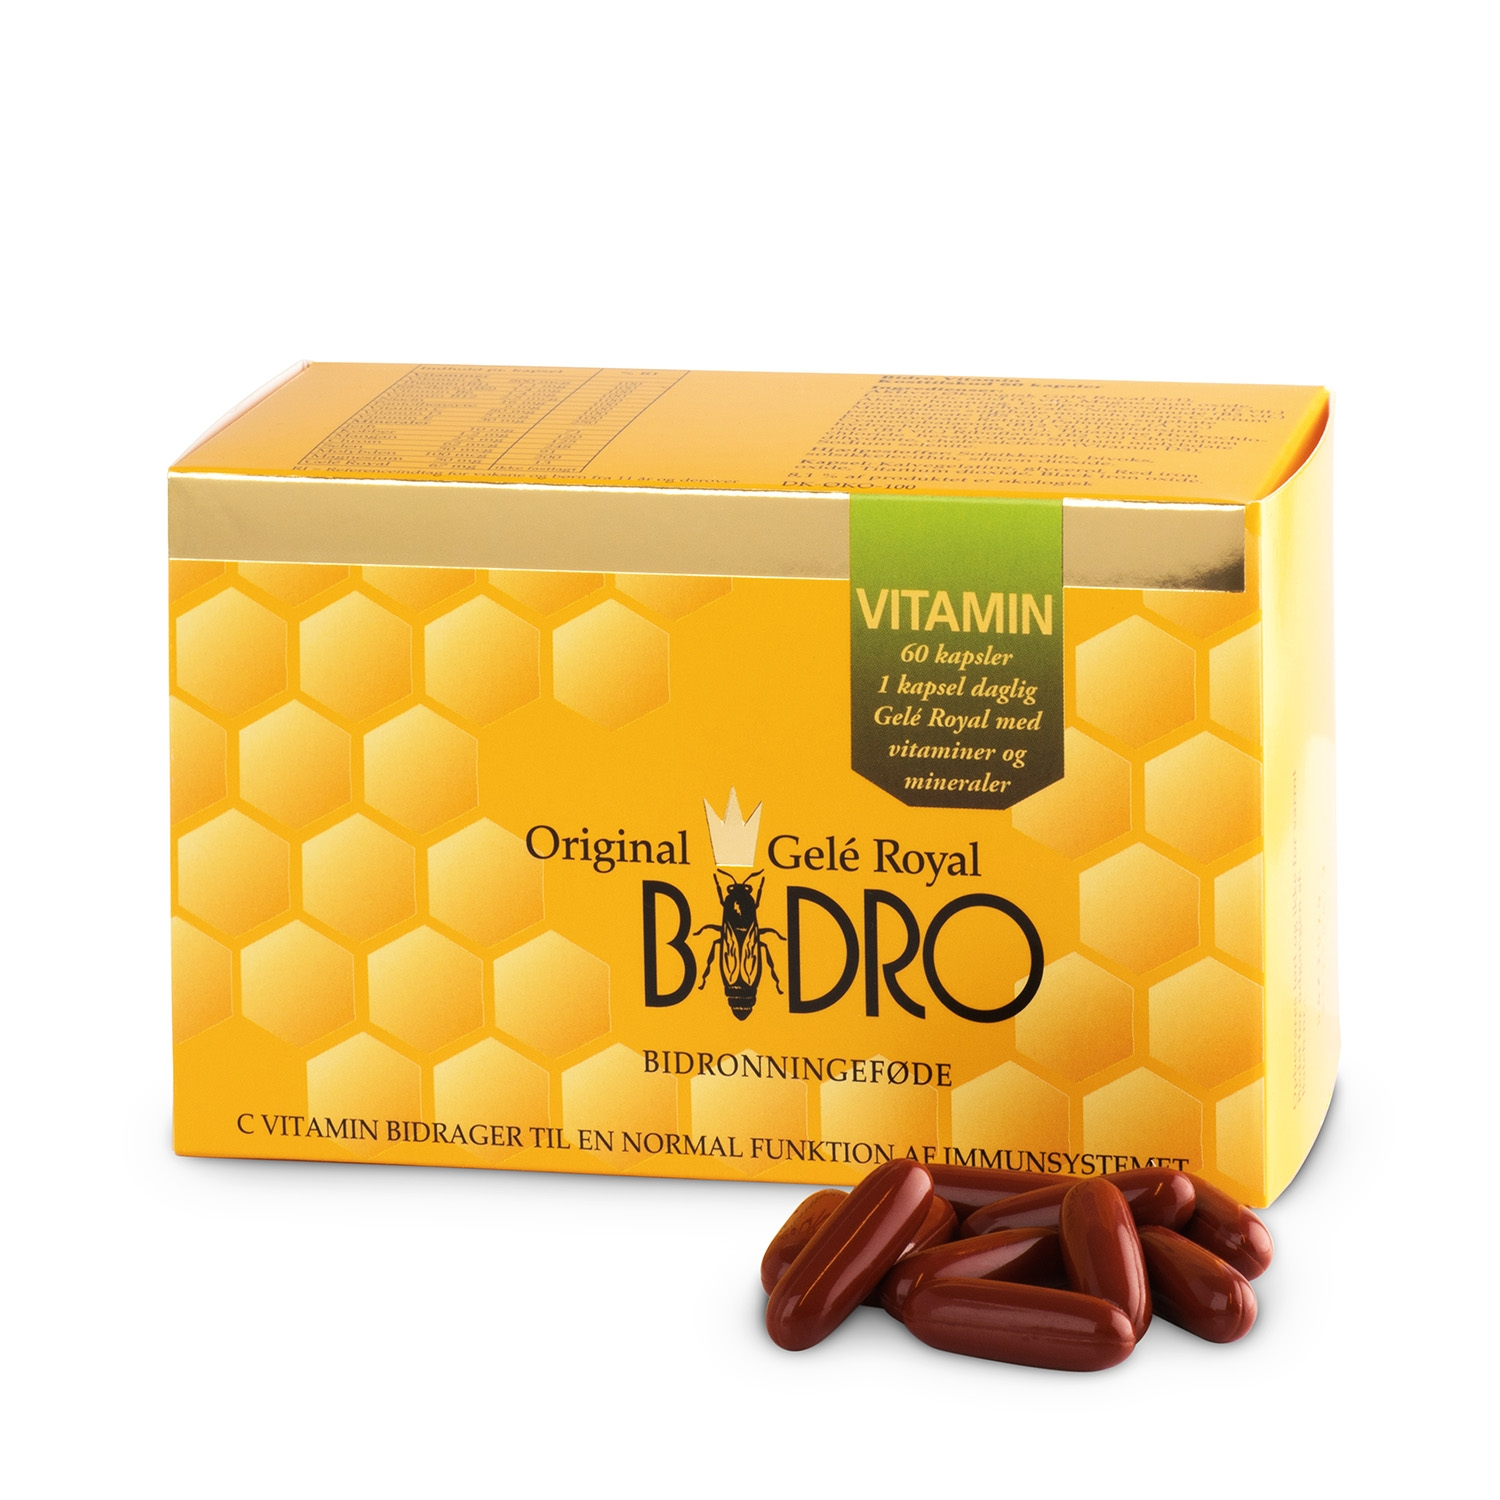 Se Bidro Vitamin Vegansk (60 kaps) hos Well.dk